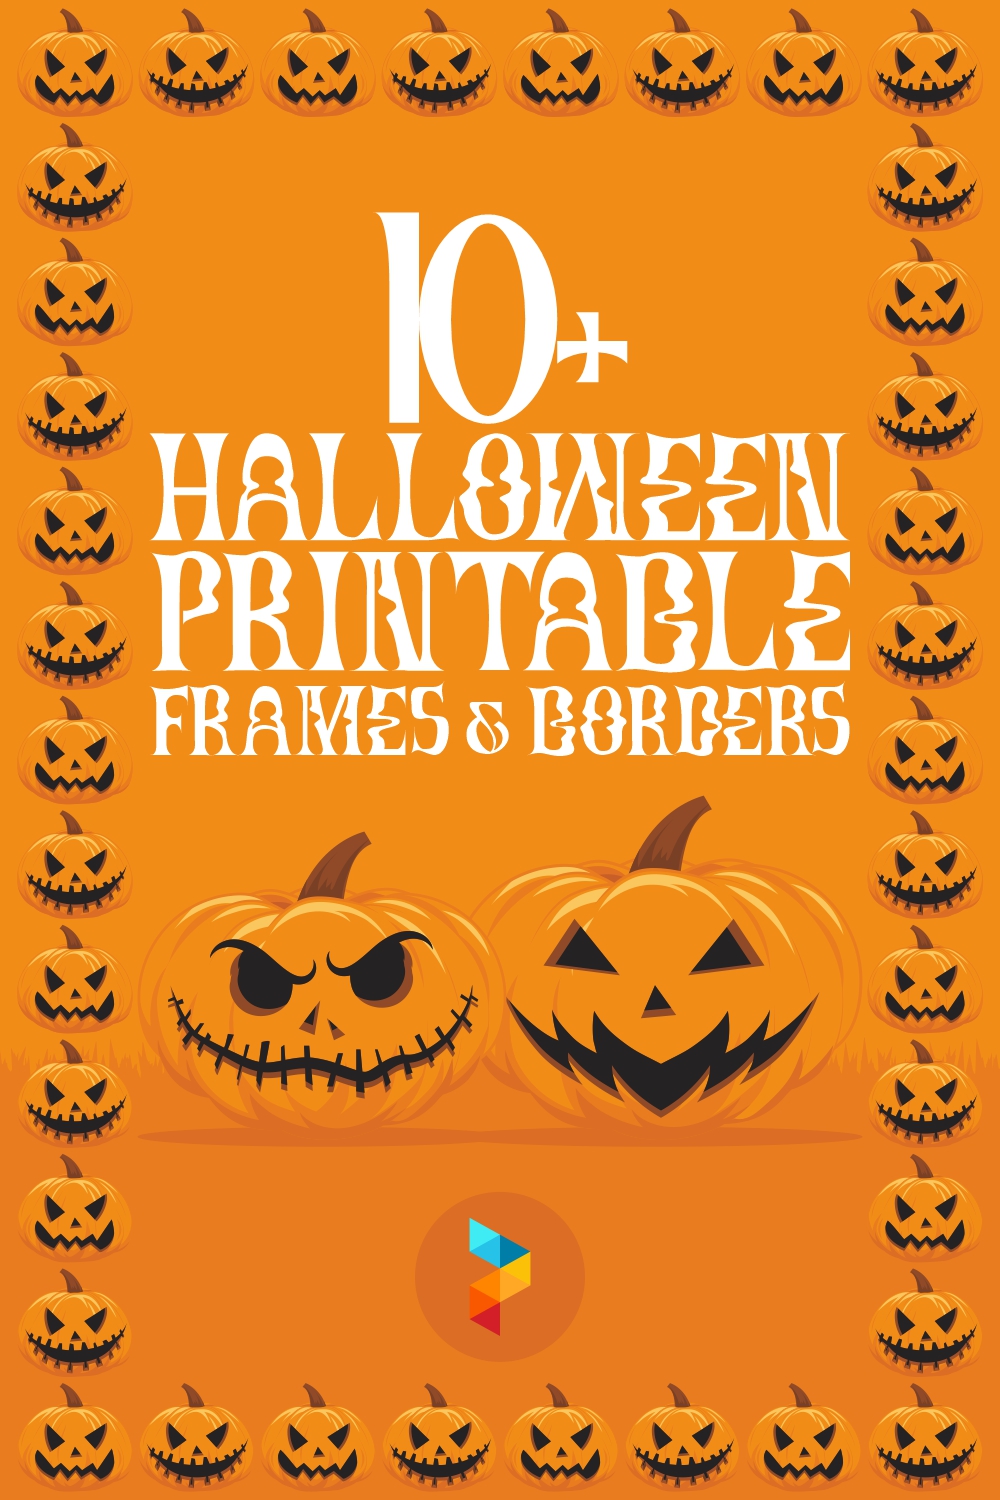 Halloween Printable Frames And Borders